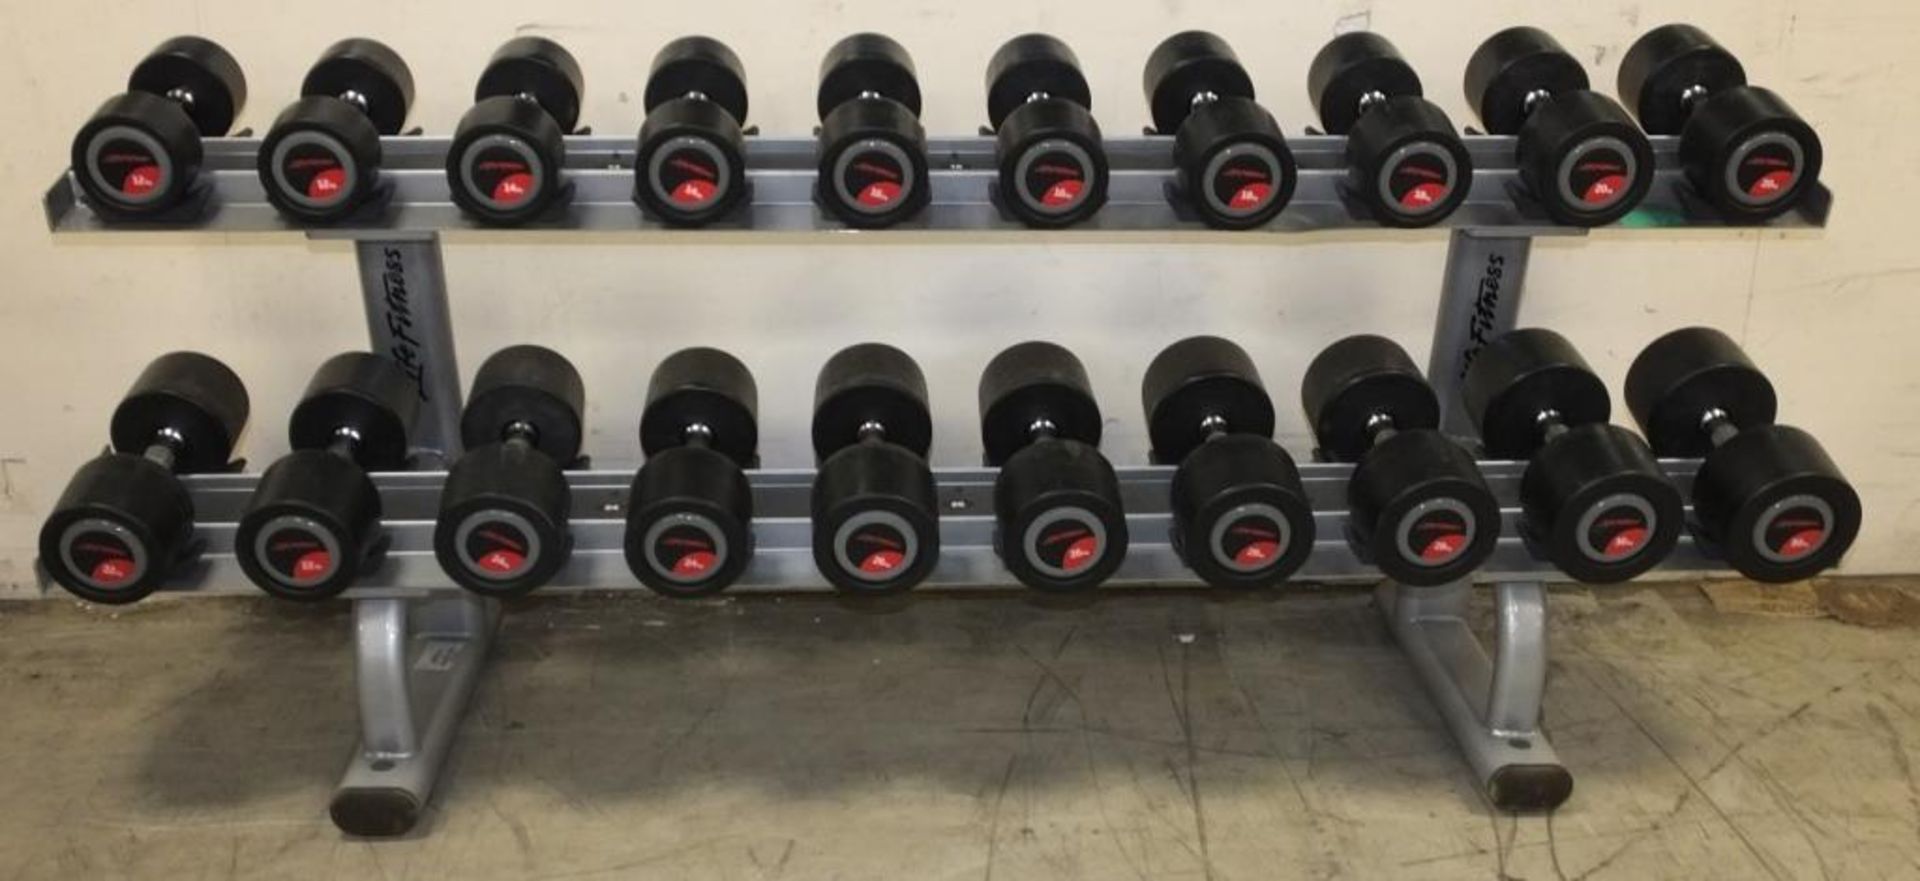 Life Fitness complete dumbbell set on rack - pairs of - 12kg, 14kg, 16kg, 18kg, 20kg, 22kg and more